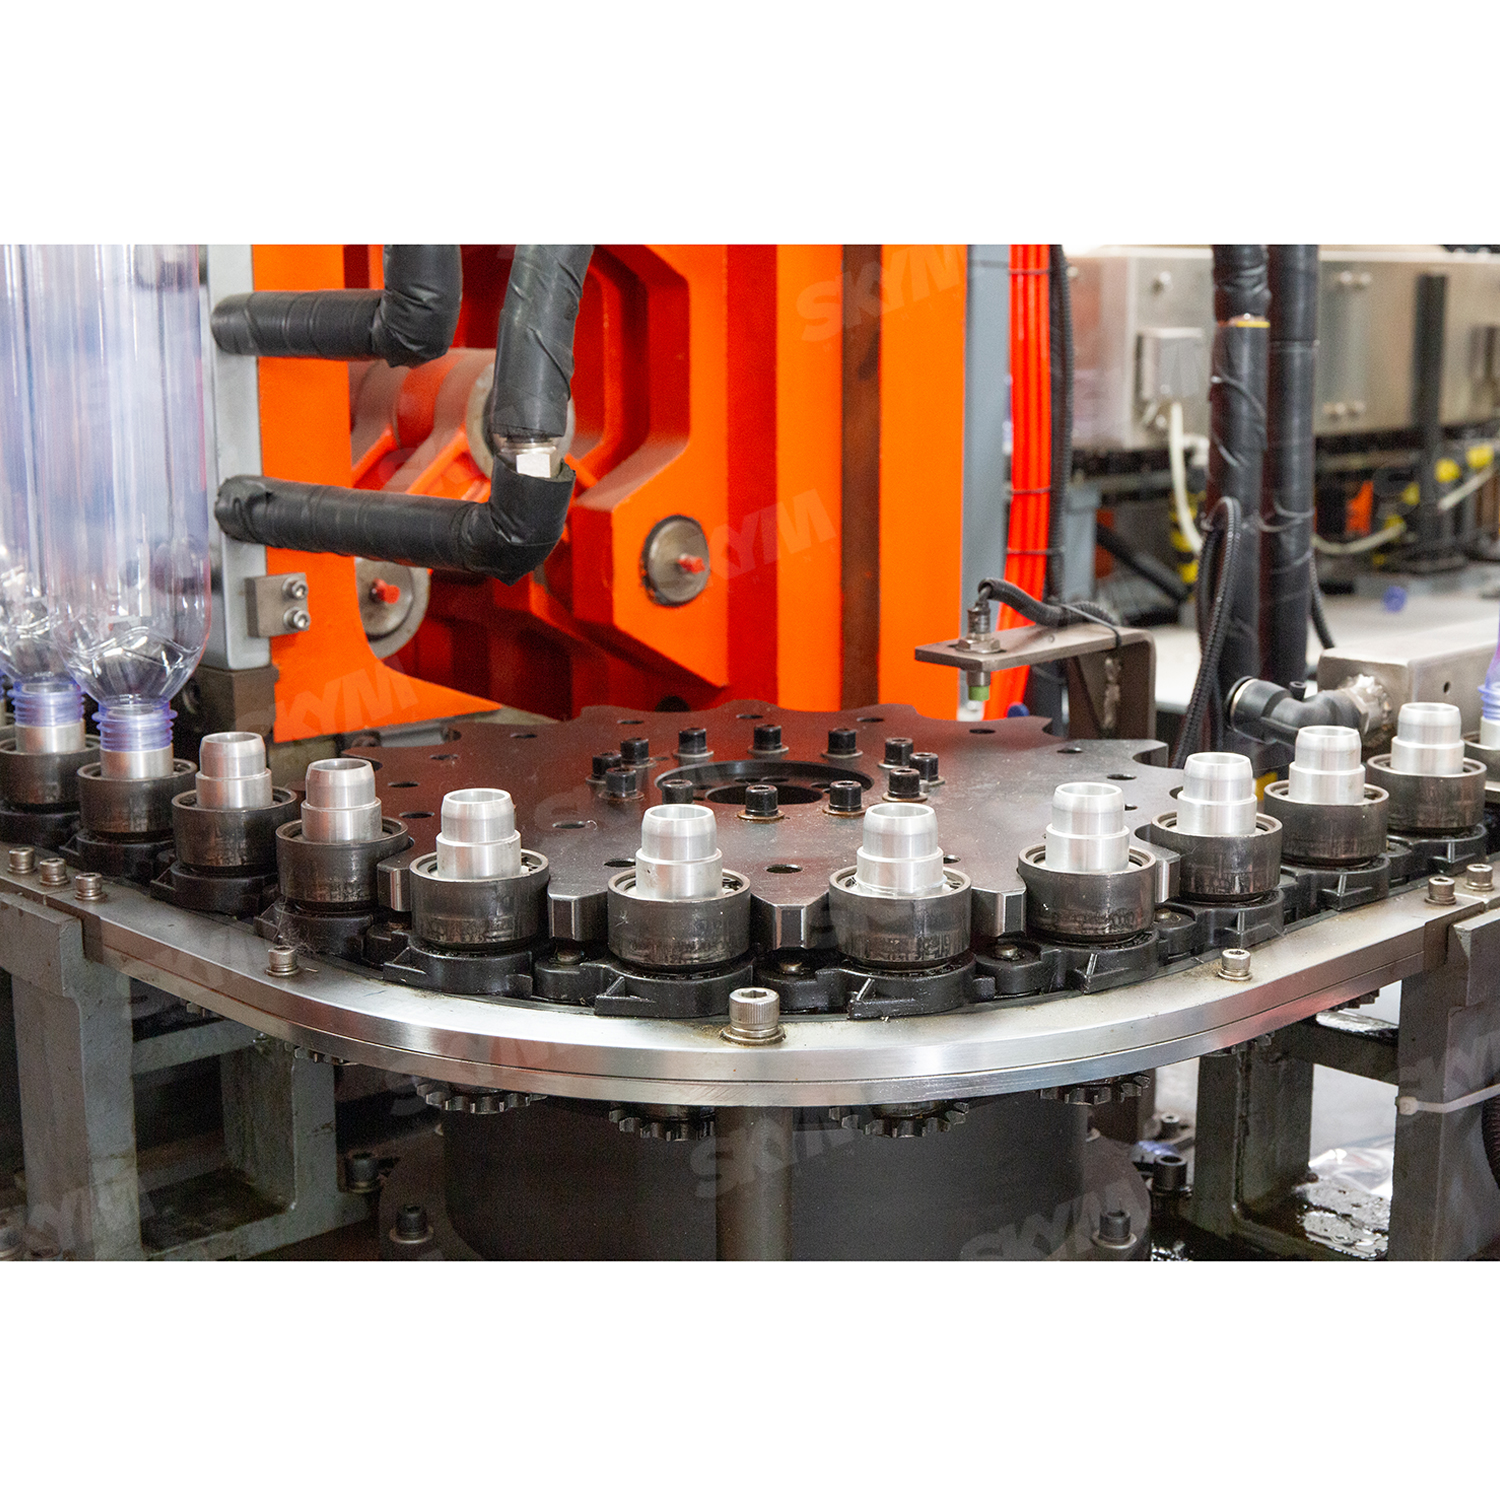 Máquina de moldagem por sopro de garrafas PET para linha de produção industrial de bebidas